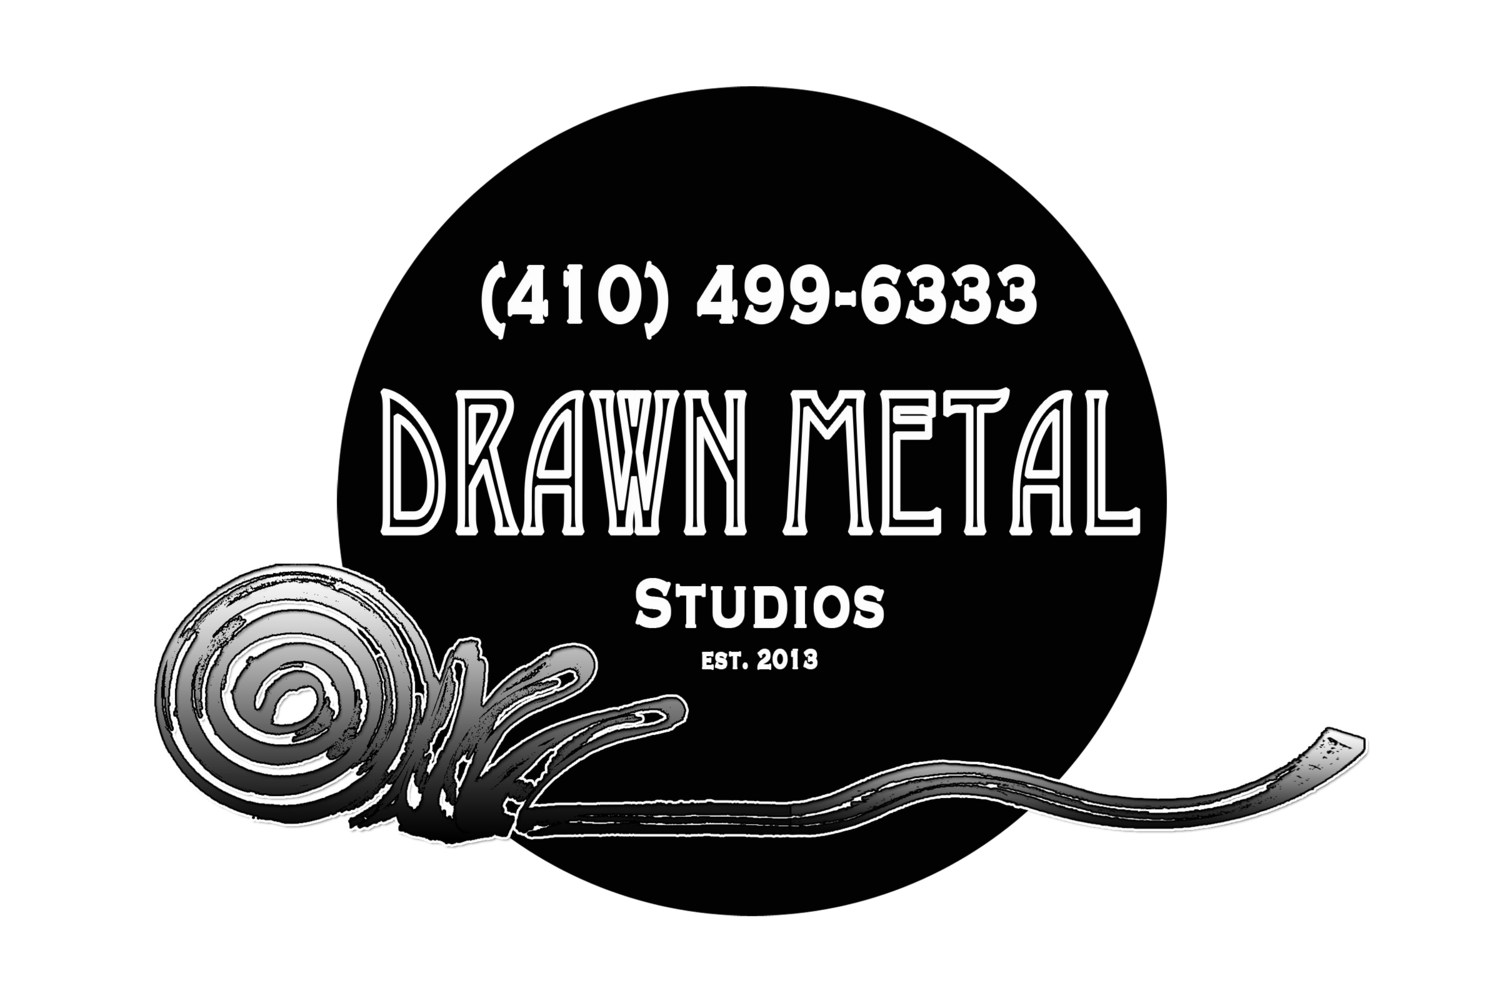 Drawn Metal Studios